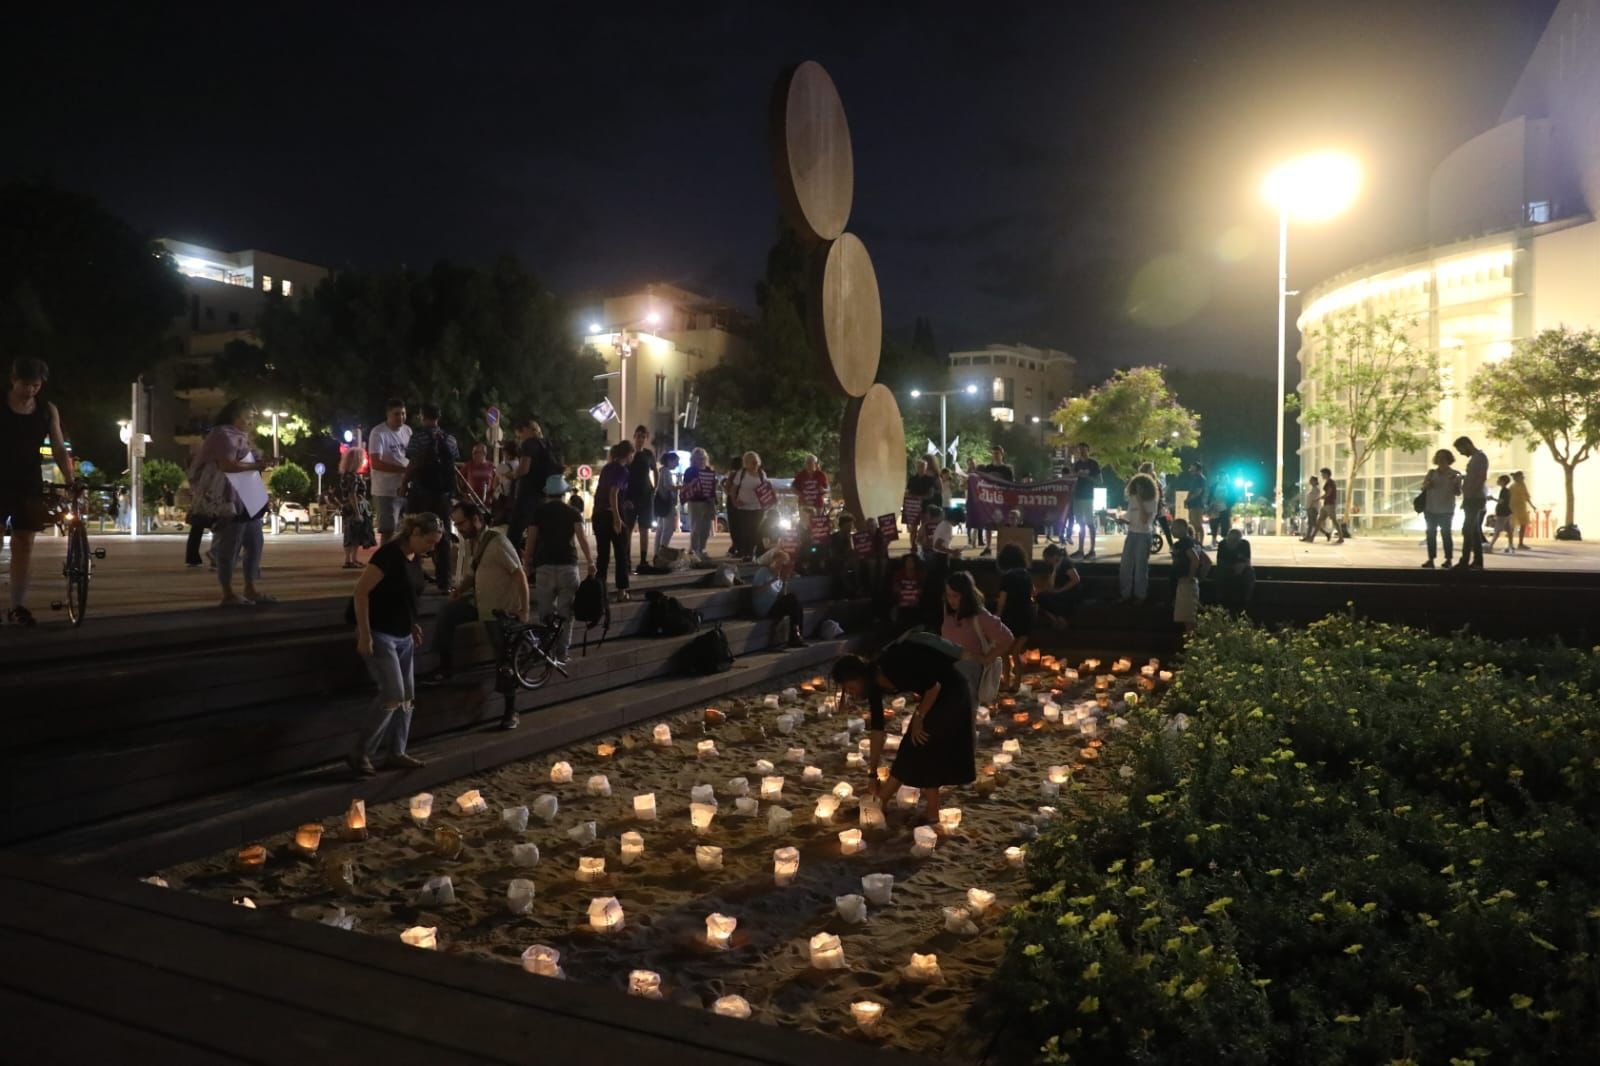 نشطاء عرب ويهود يضيؤون الشموع لذكرى ضحايا الجريمة والعنف في المجتمع العربي في ميدان هبيماه في تل أبيب.-2